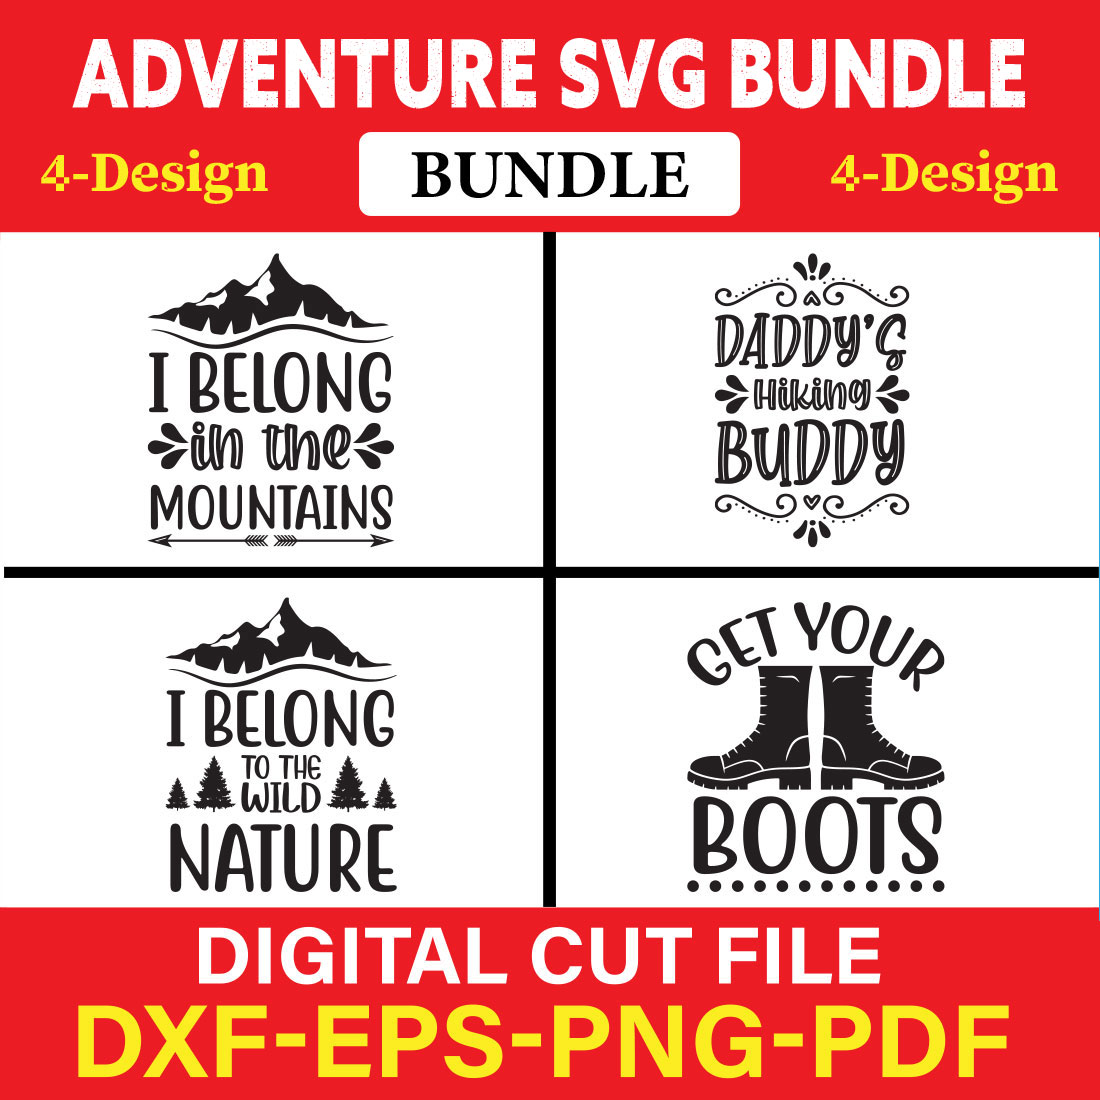 Adventure T-shirt Design Bundle Vol-2 cover image.